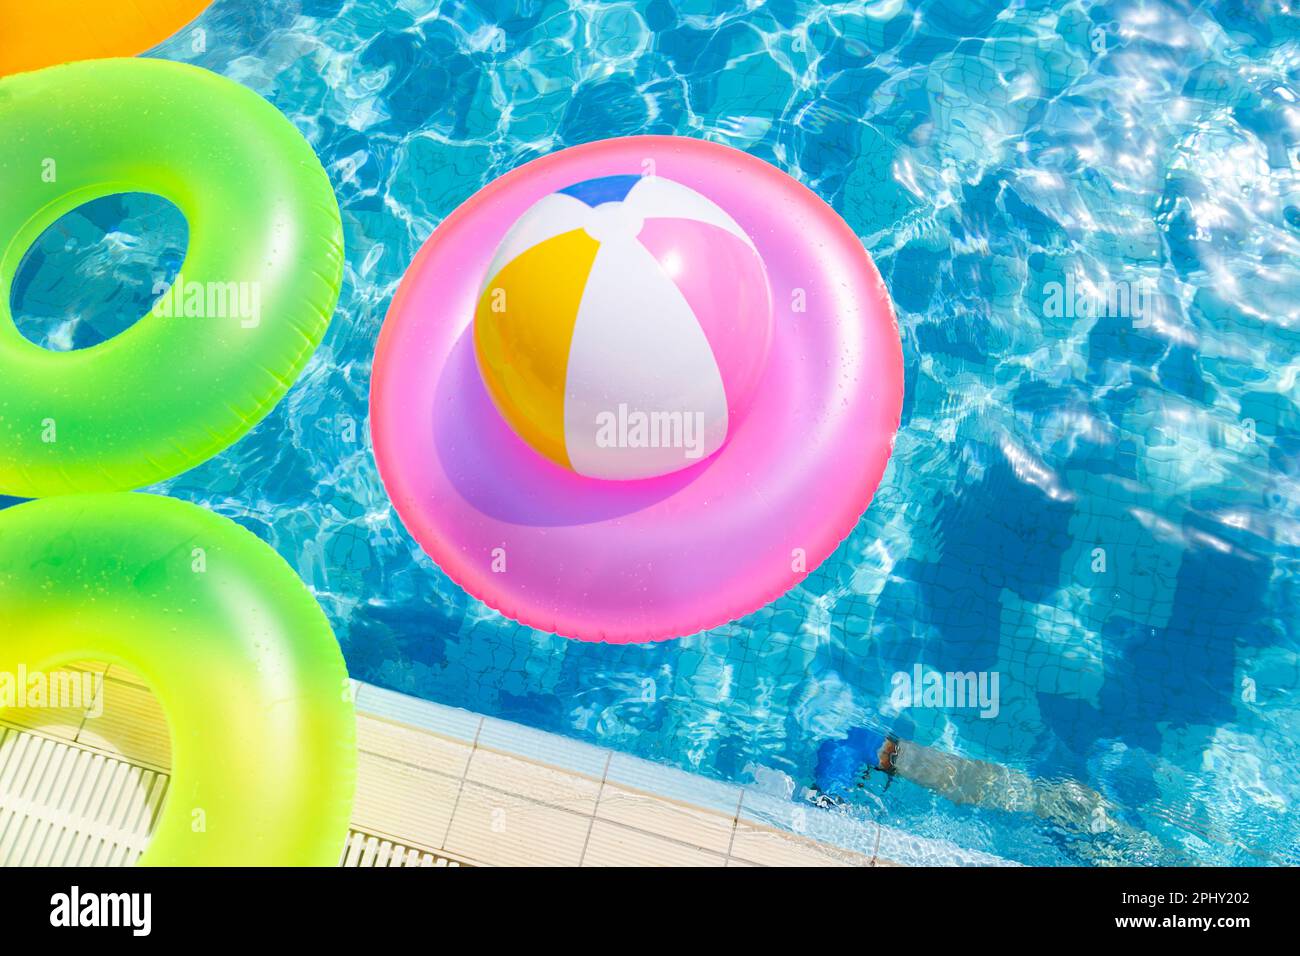 Ballon de piscine gonflable sur la bouée de sauvetage dans la piscine Banque D'Images